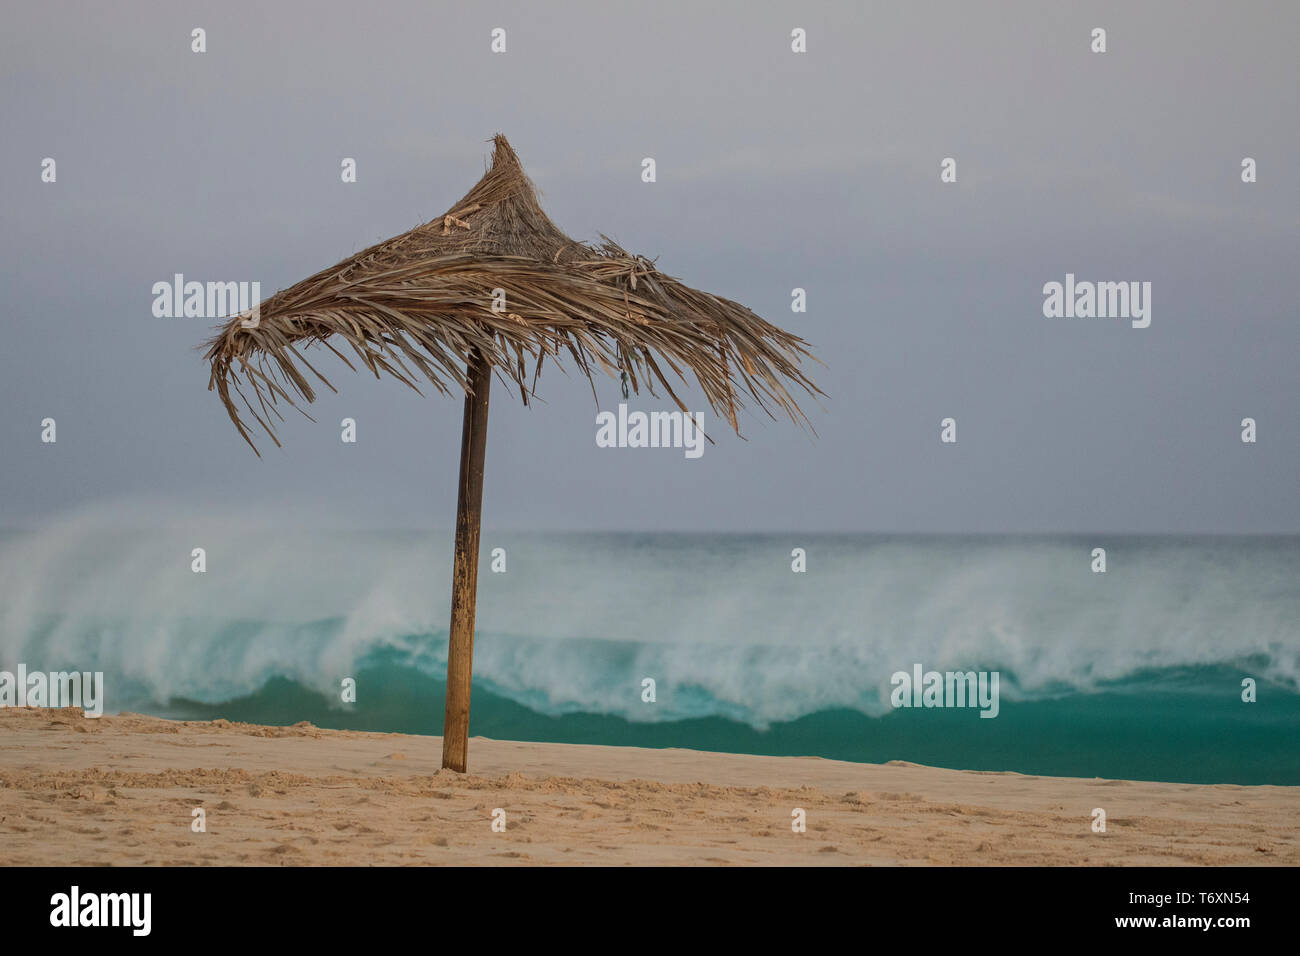 Rough sea and palm leaf umbrella, Praia Lacacao, Santa Monica, Boa Vista Stock Photo